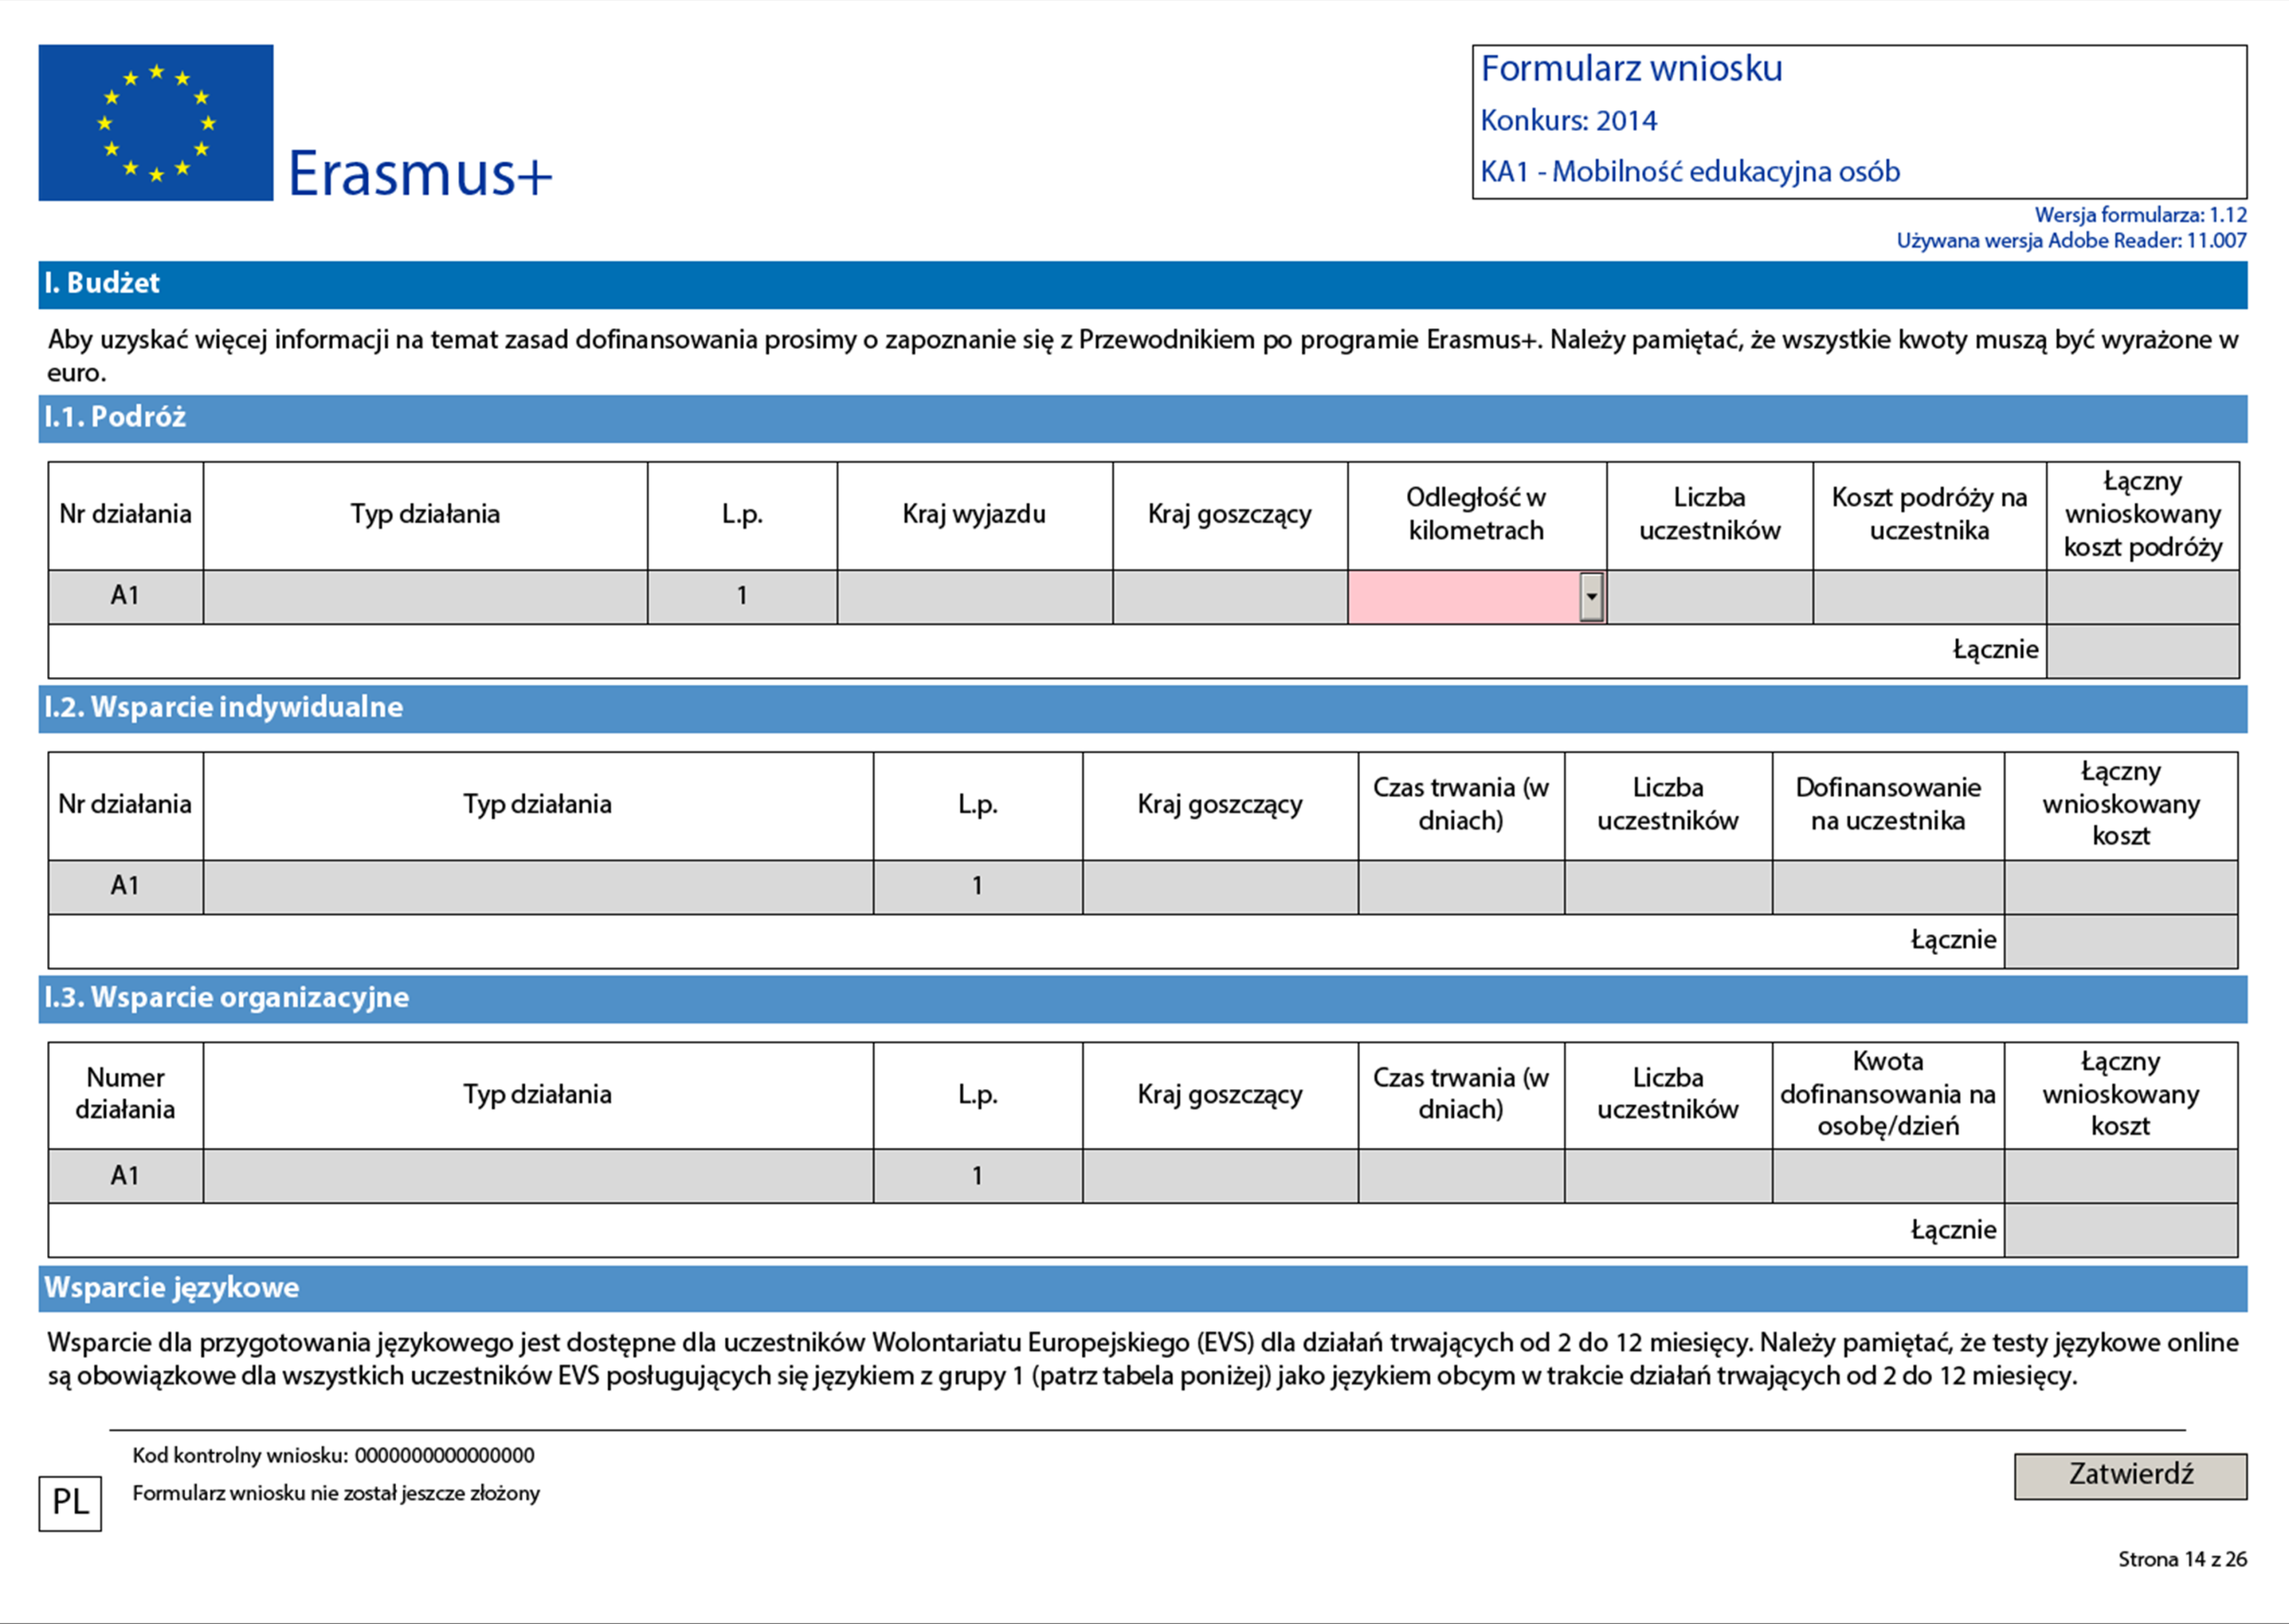 Zapoznaj się z informacjami zawartymi w Przewodniku po programie Erasmus+ (patrz tabela budżetowa).